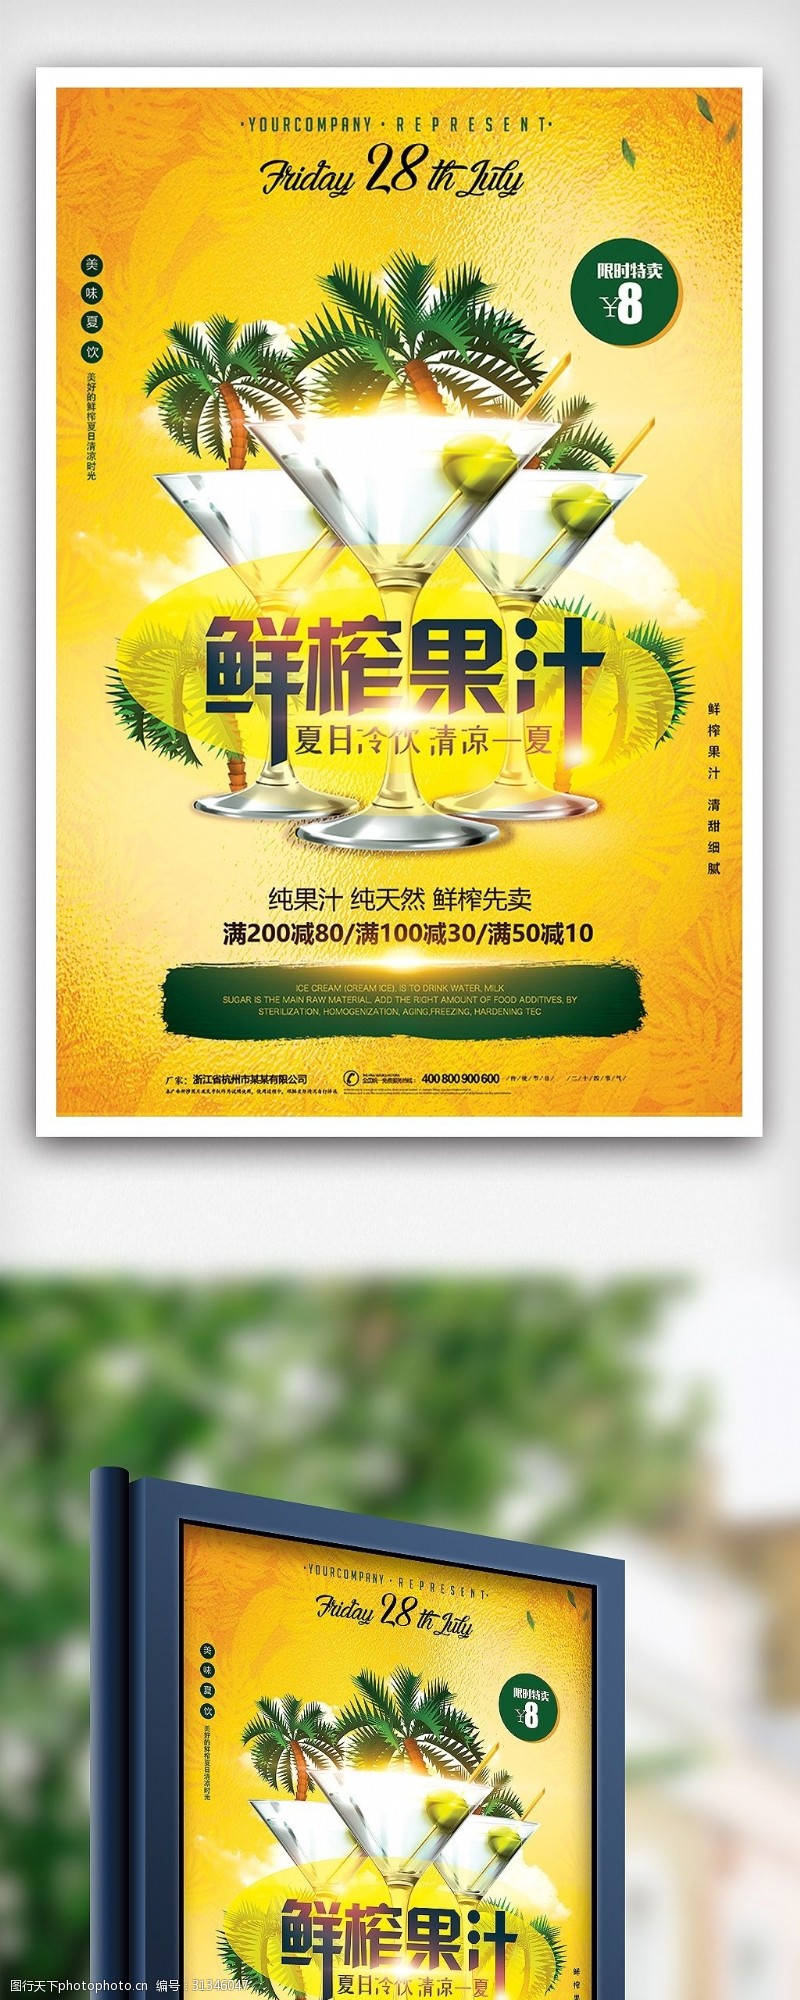 鲜榨果汁免费下载夏季清爽果饮鲜榨果汁夏天饮品海报